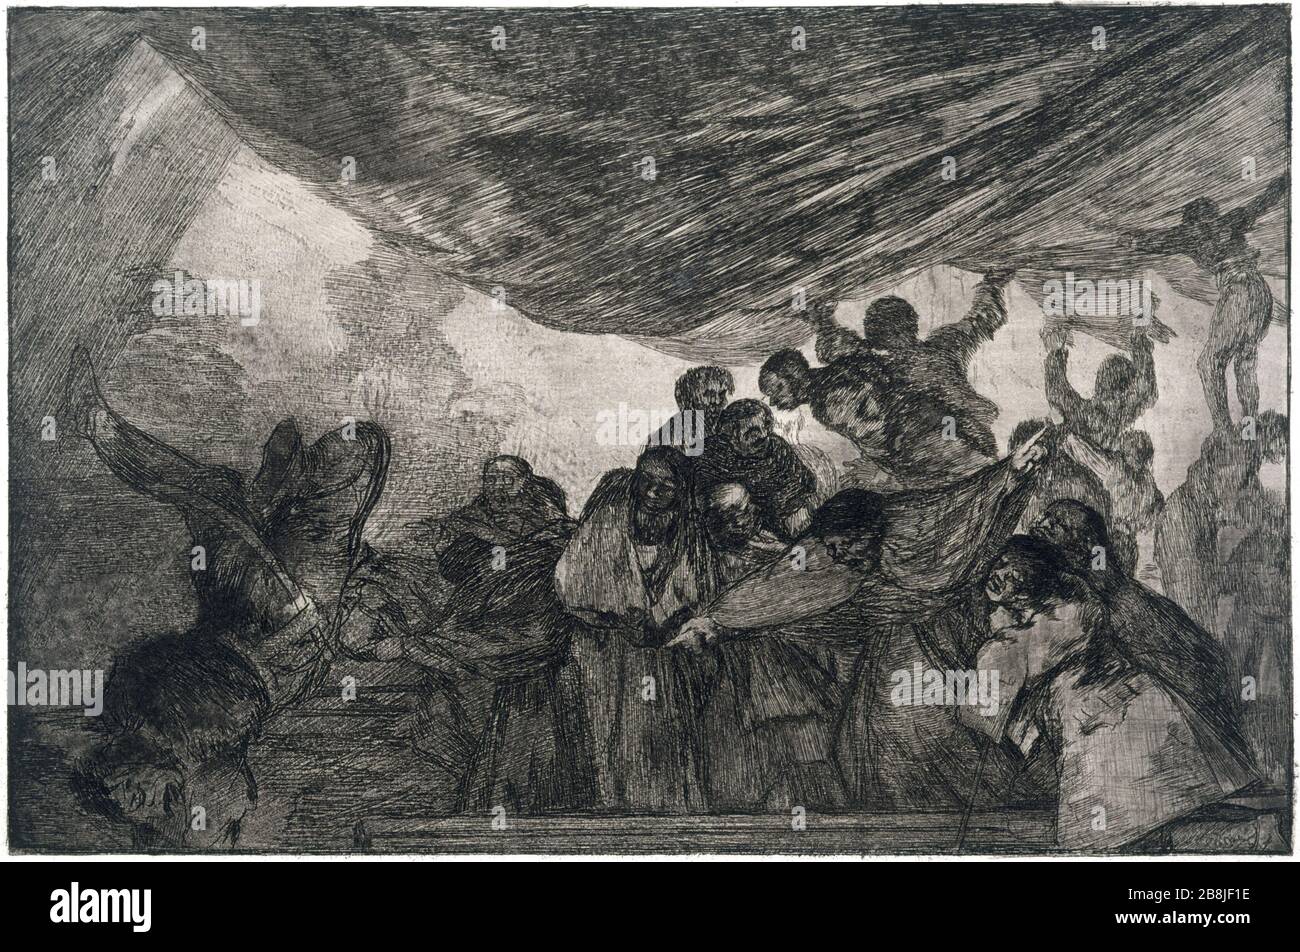 The Follies - DISPARATE CLARO - DISPARATE CLAIRE Francisco José de Goya y Lucientes (1746-1828). 'Los Disparates - Disparate claire'. Musée des Beaux-Arts de la Ville de Paris, Petit Palais. Stock Photo